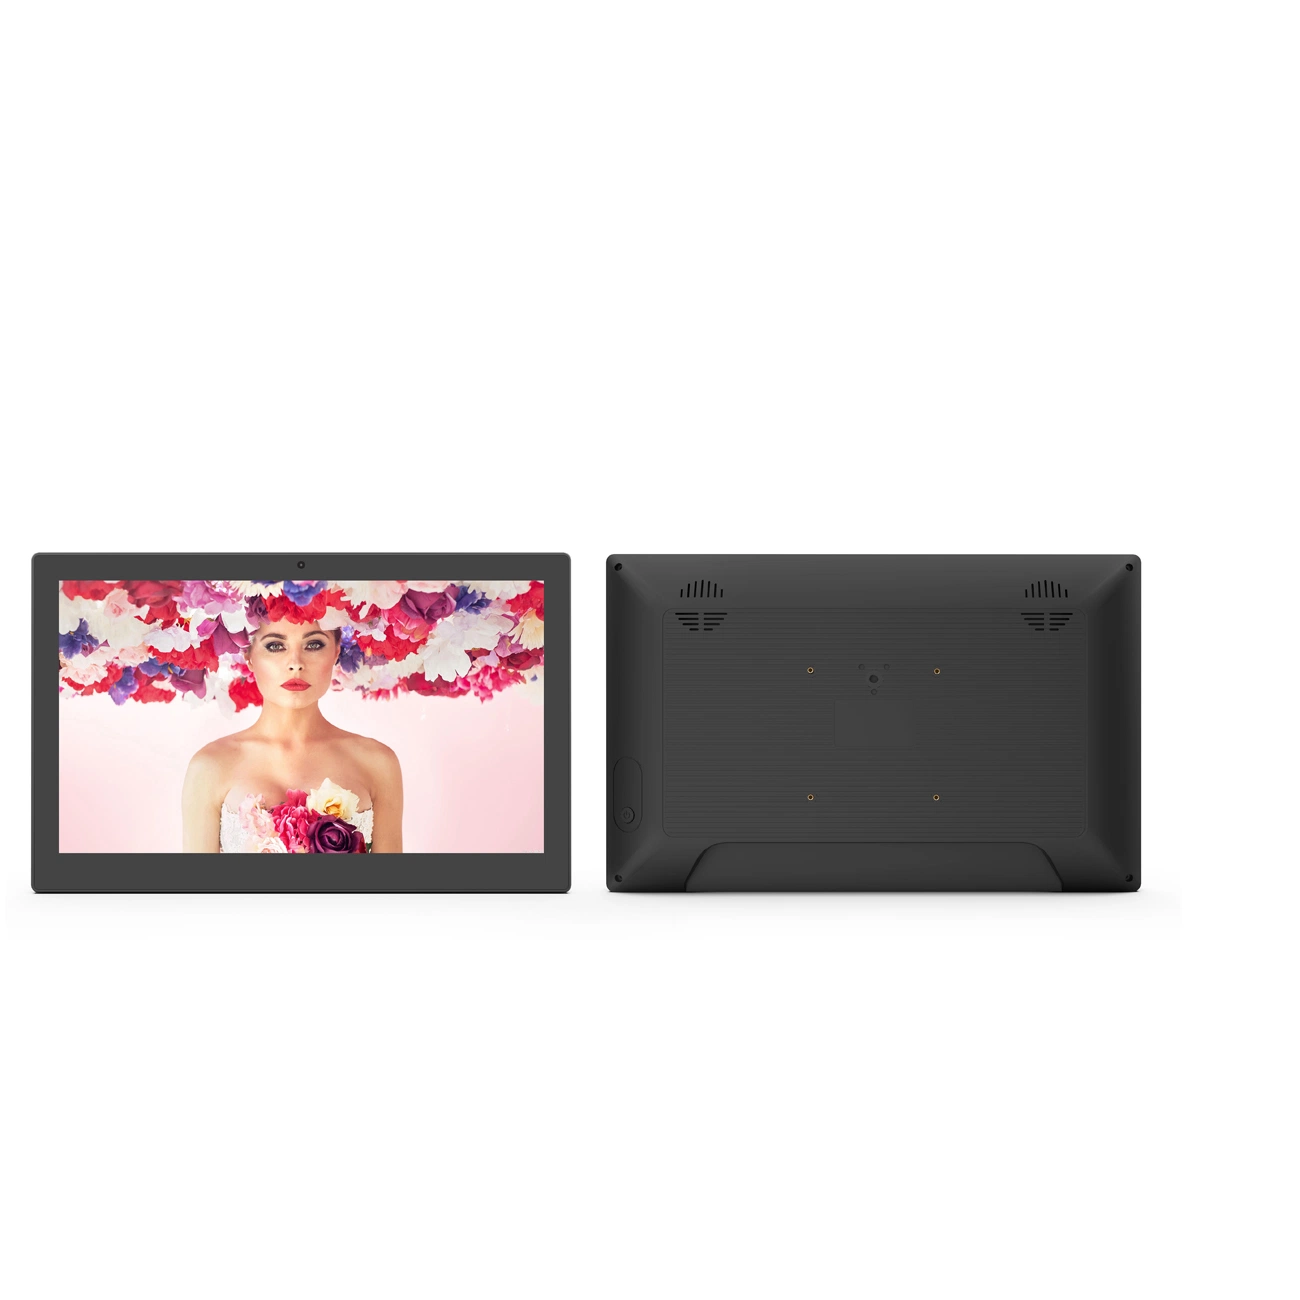 Venda por grosso 13.3/15.6 polegadas montado na parede tela de toque capacitivo WiFi RJ45 do painel LCD USB SD Card NFC interior sinalização digital LCD Comercial Tela Sensível ao Toque